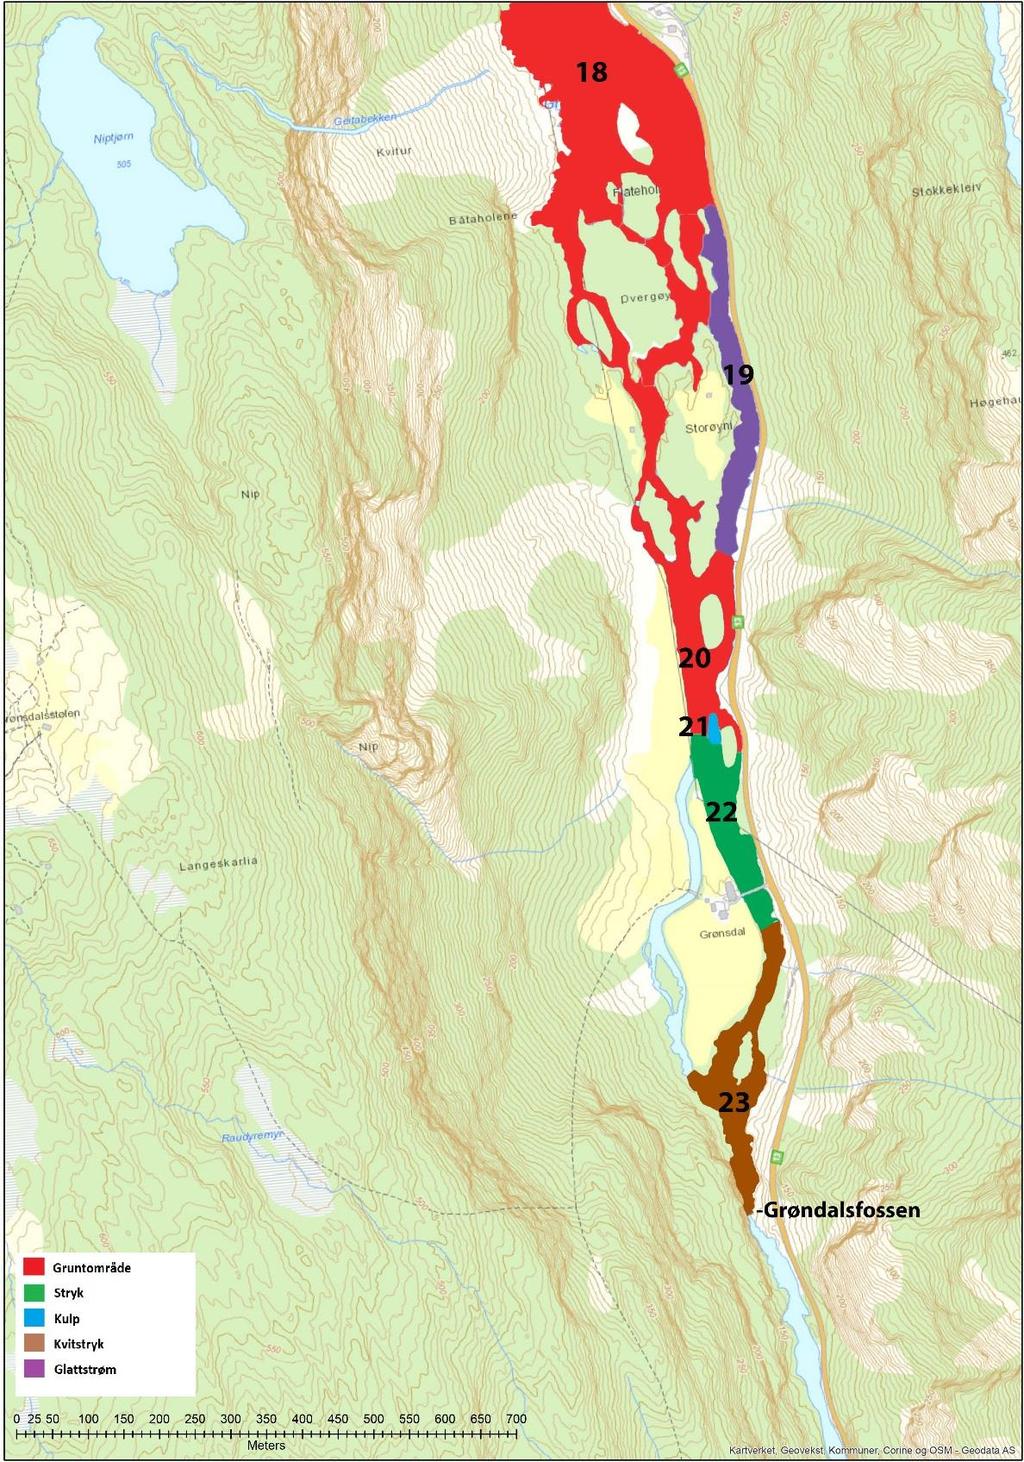 Figur 7.8. Mesohabitat i øvre del av Storelva opp til vandringshinderet ved Grønsdalsfossen, kartlagt 29. og 30. mars 2017.